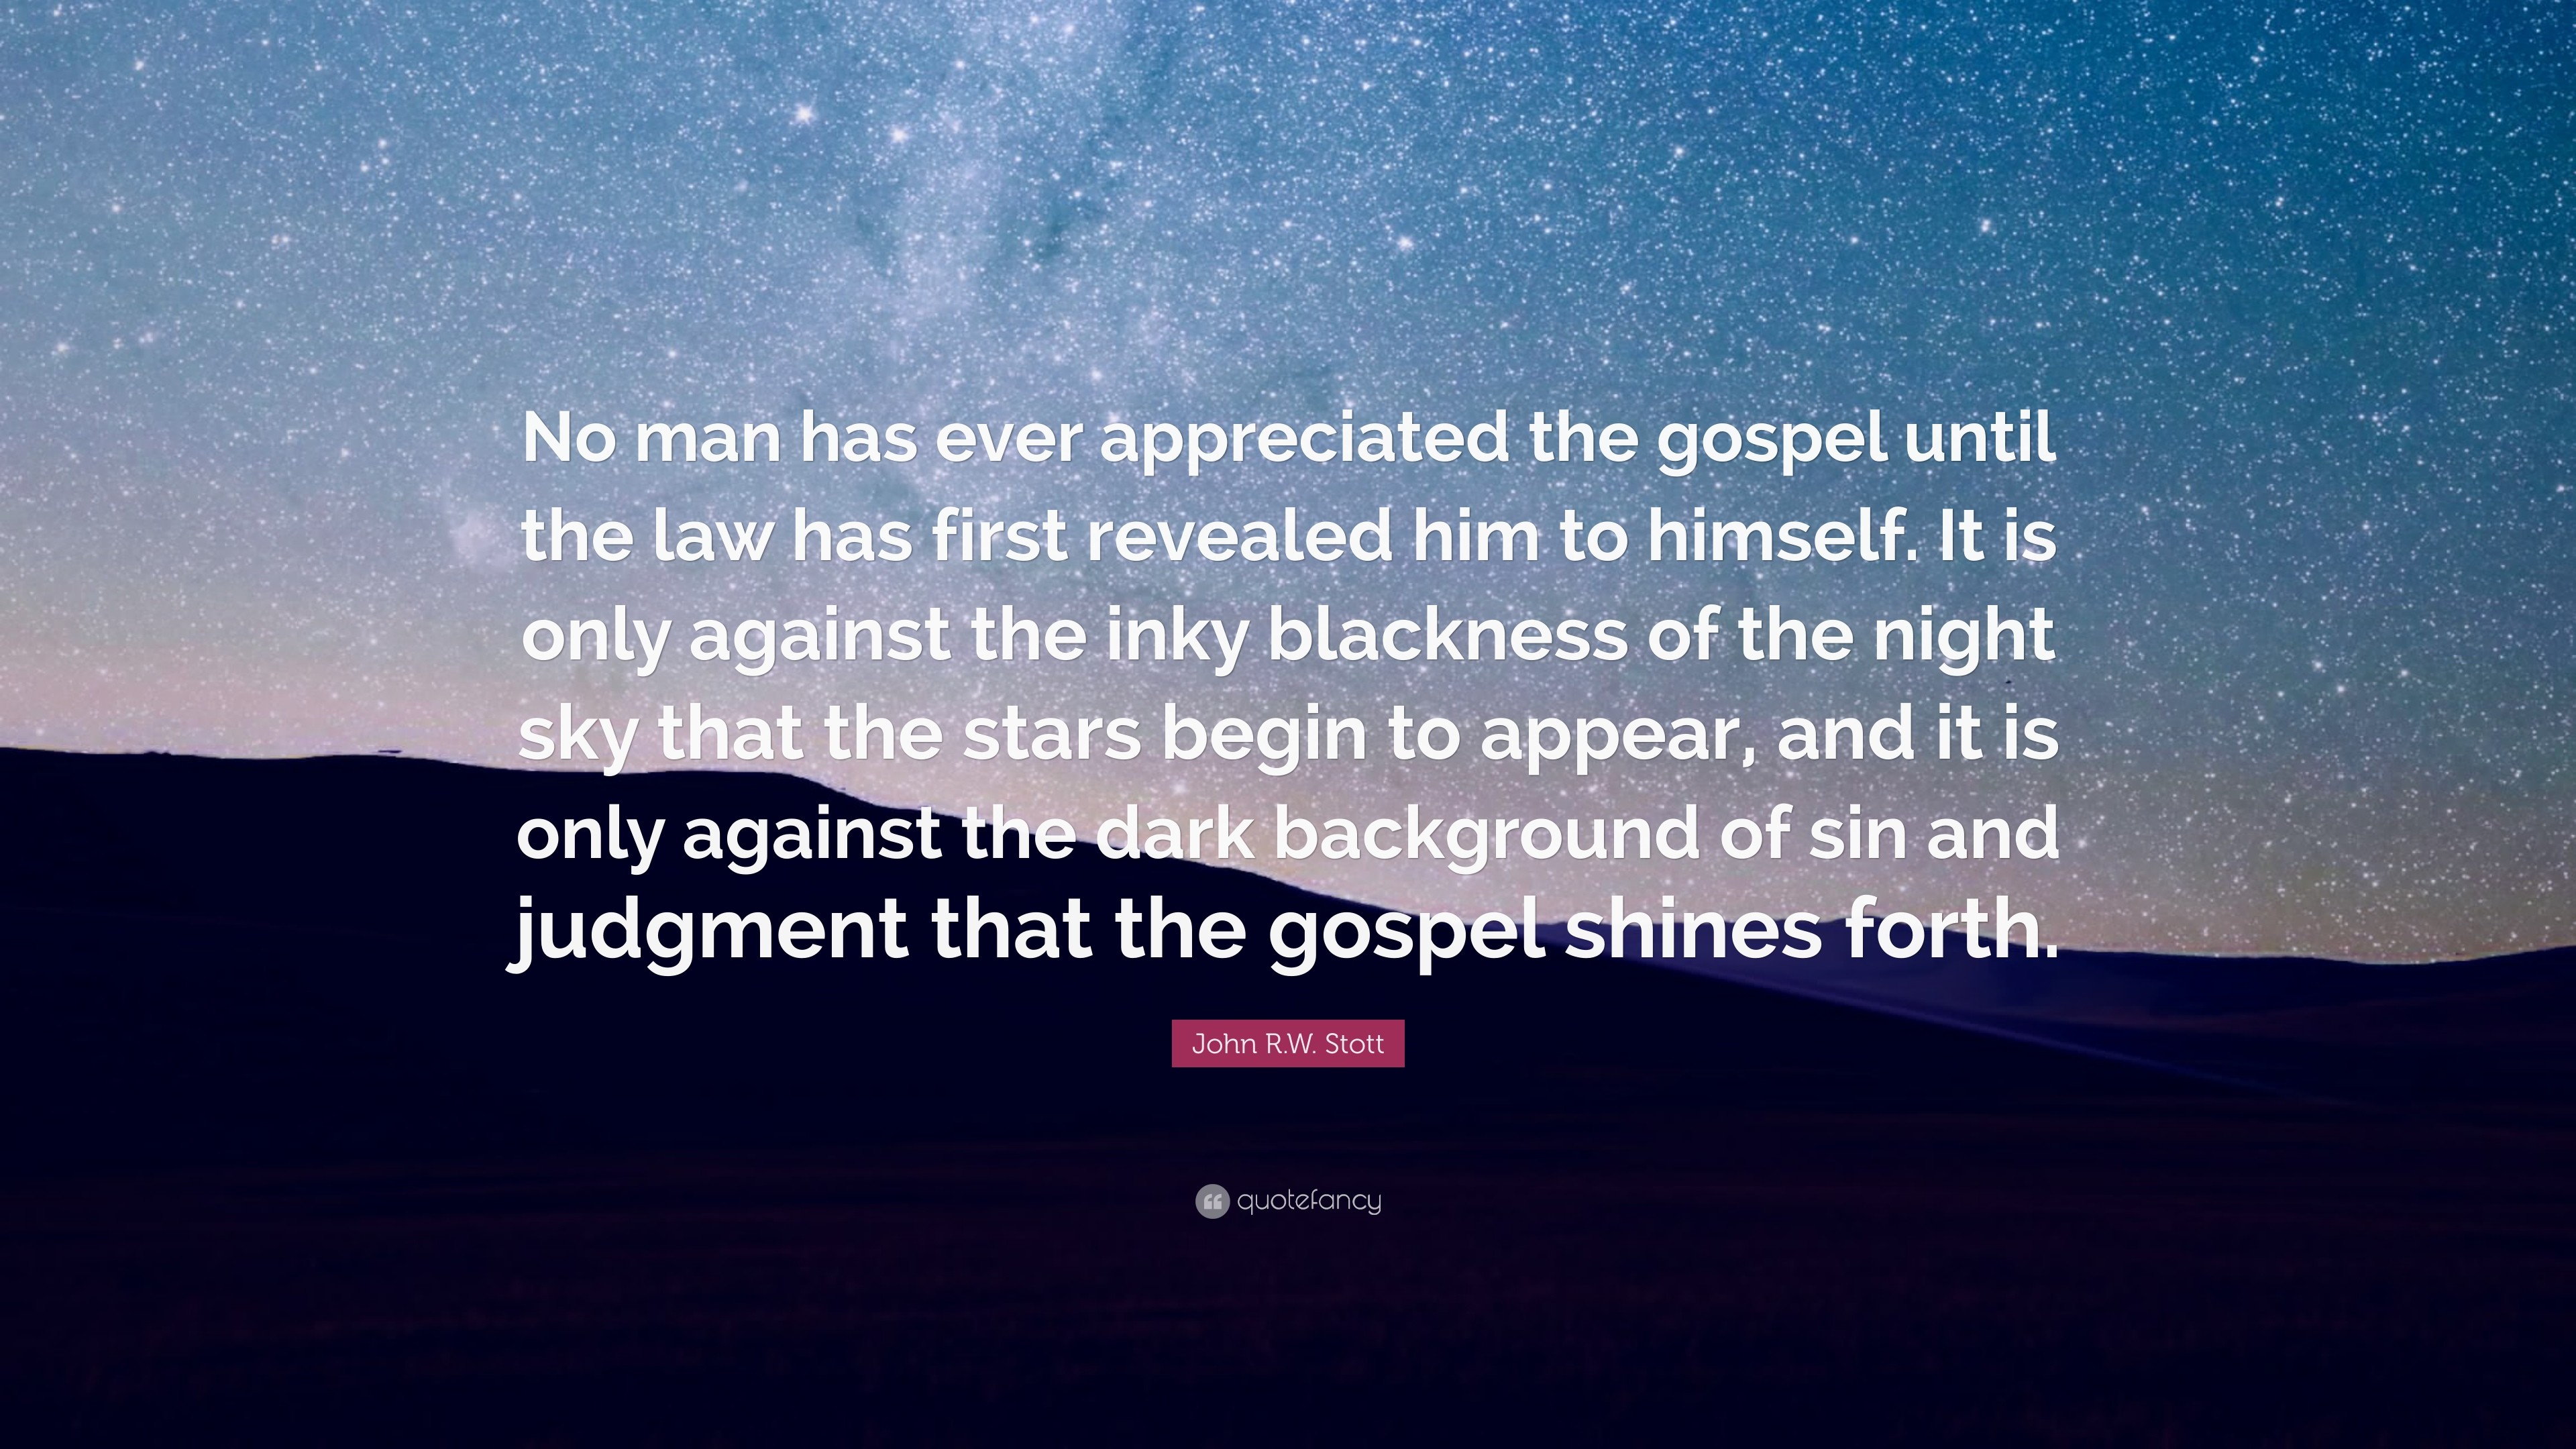 3840x2160 John R.W. Stott Quote: “No man has ever appreciated the gospel until the law